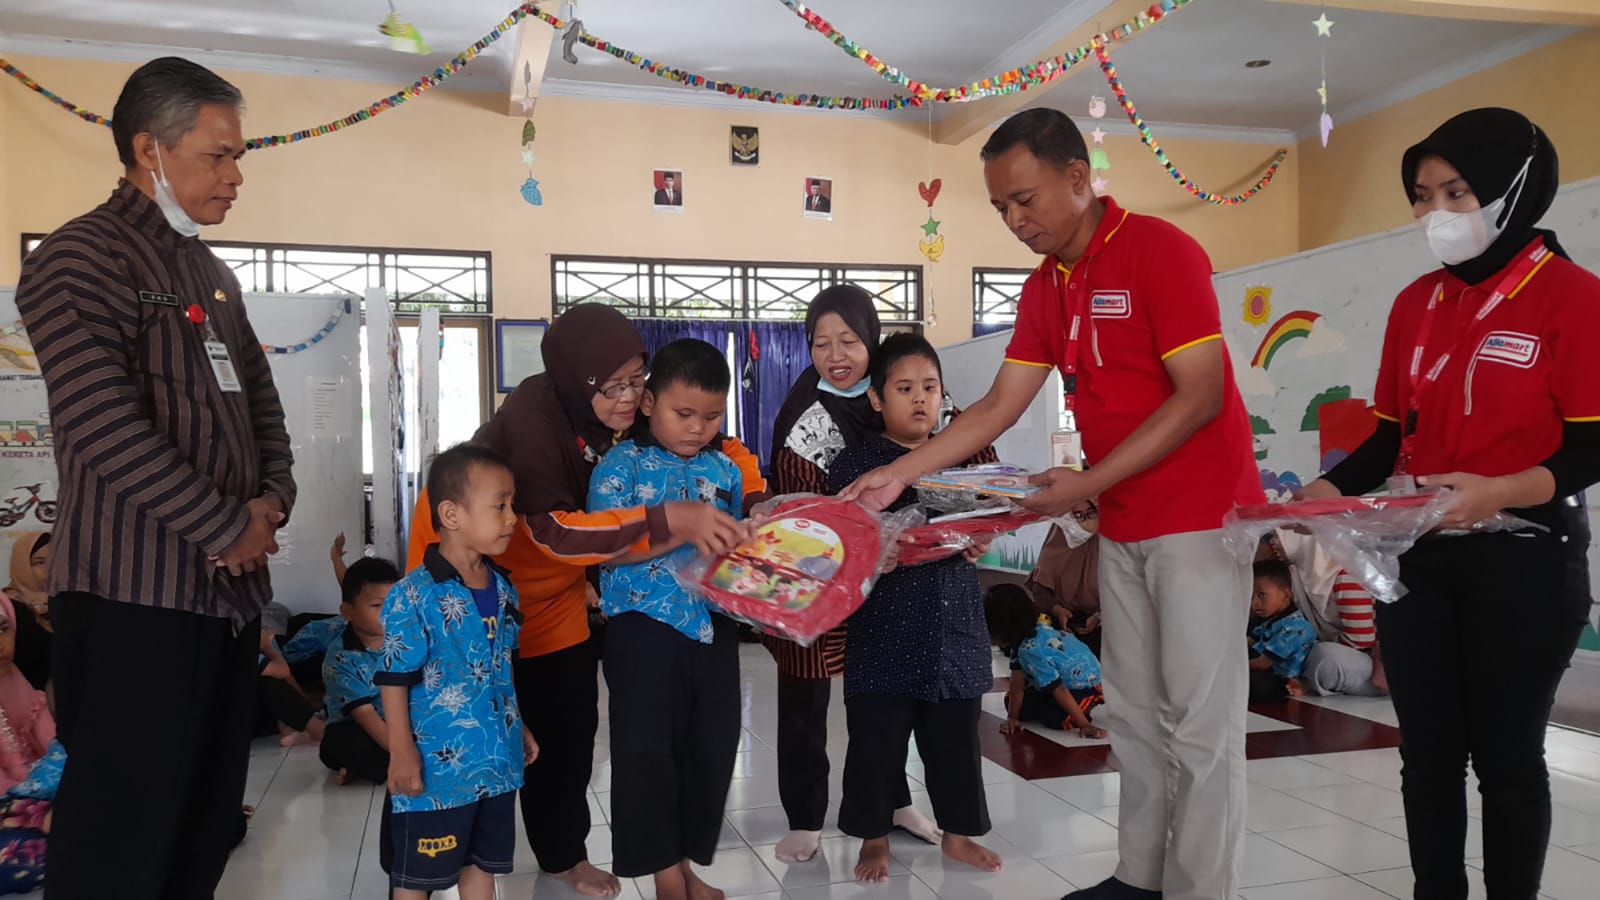 Kolaborasi “Tunjuk Tangan untuk Generasi Maju” oleh SGM Eksplor dan Alfamart Dukung Pendidikan dan Nutrisi Anak Generasi Maju Indonesia dari Aceh hingga Papua